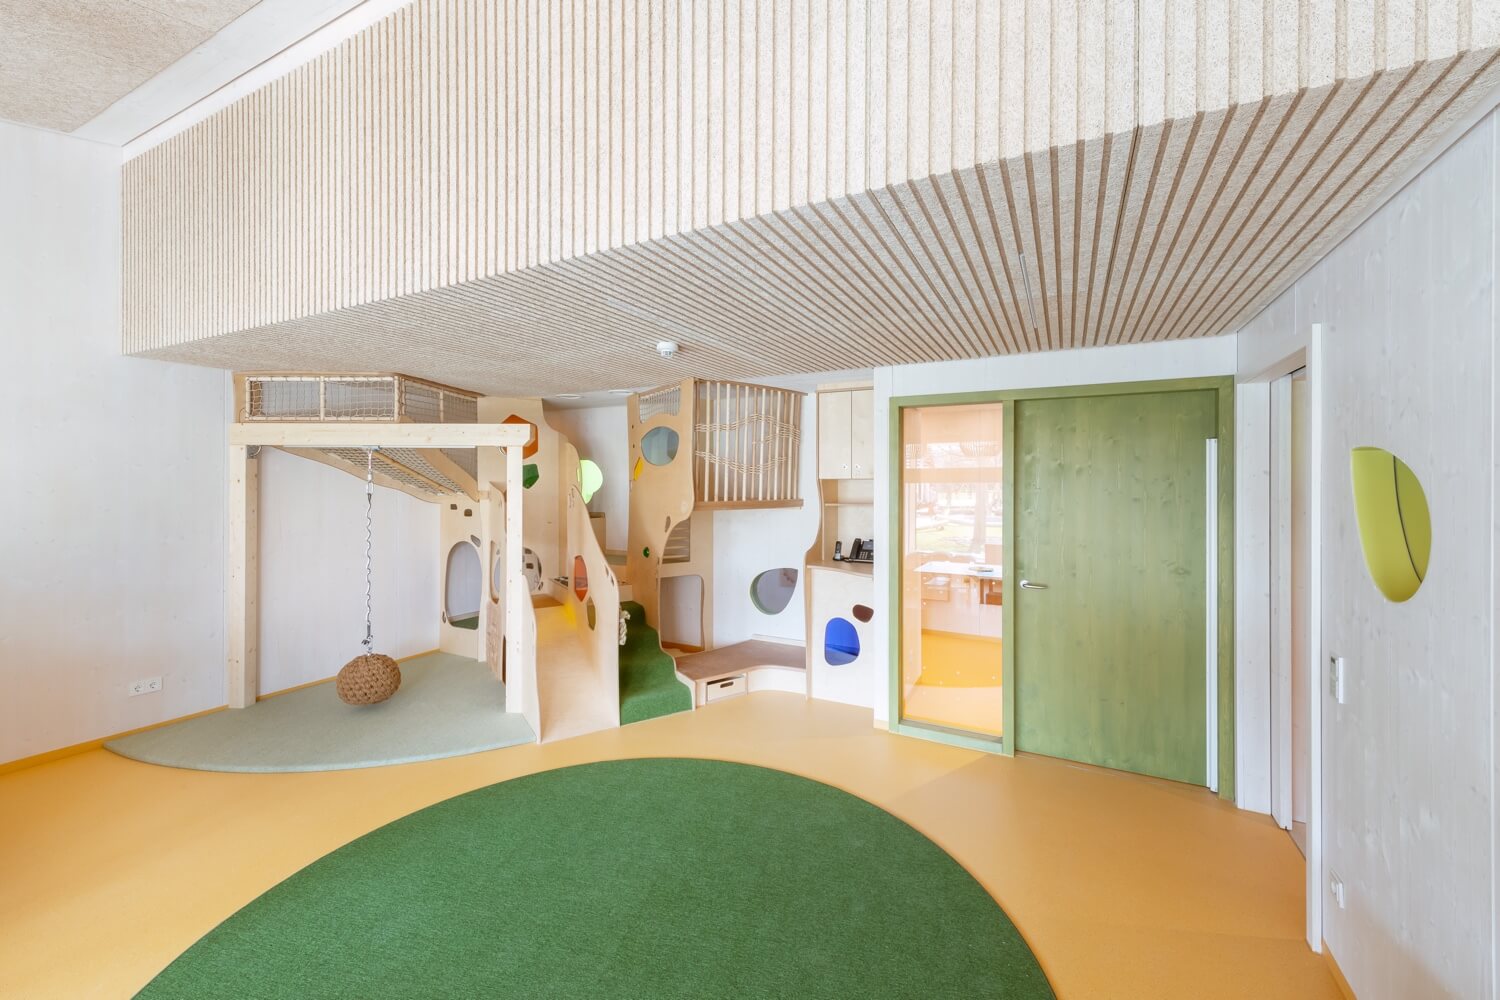 Spielraum mit Holzeinbauten in Kindertagesstätte